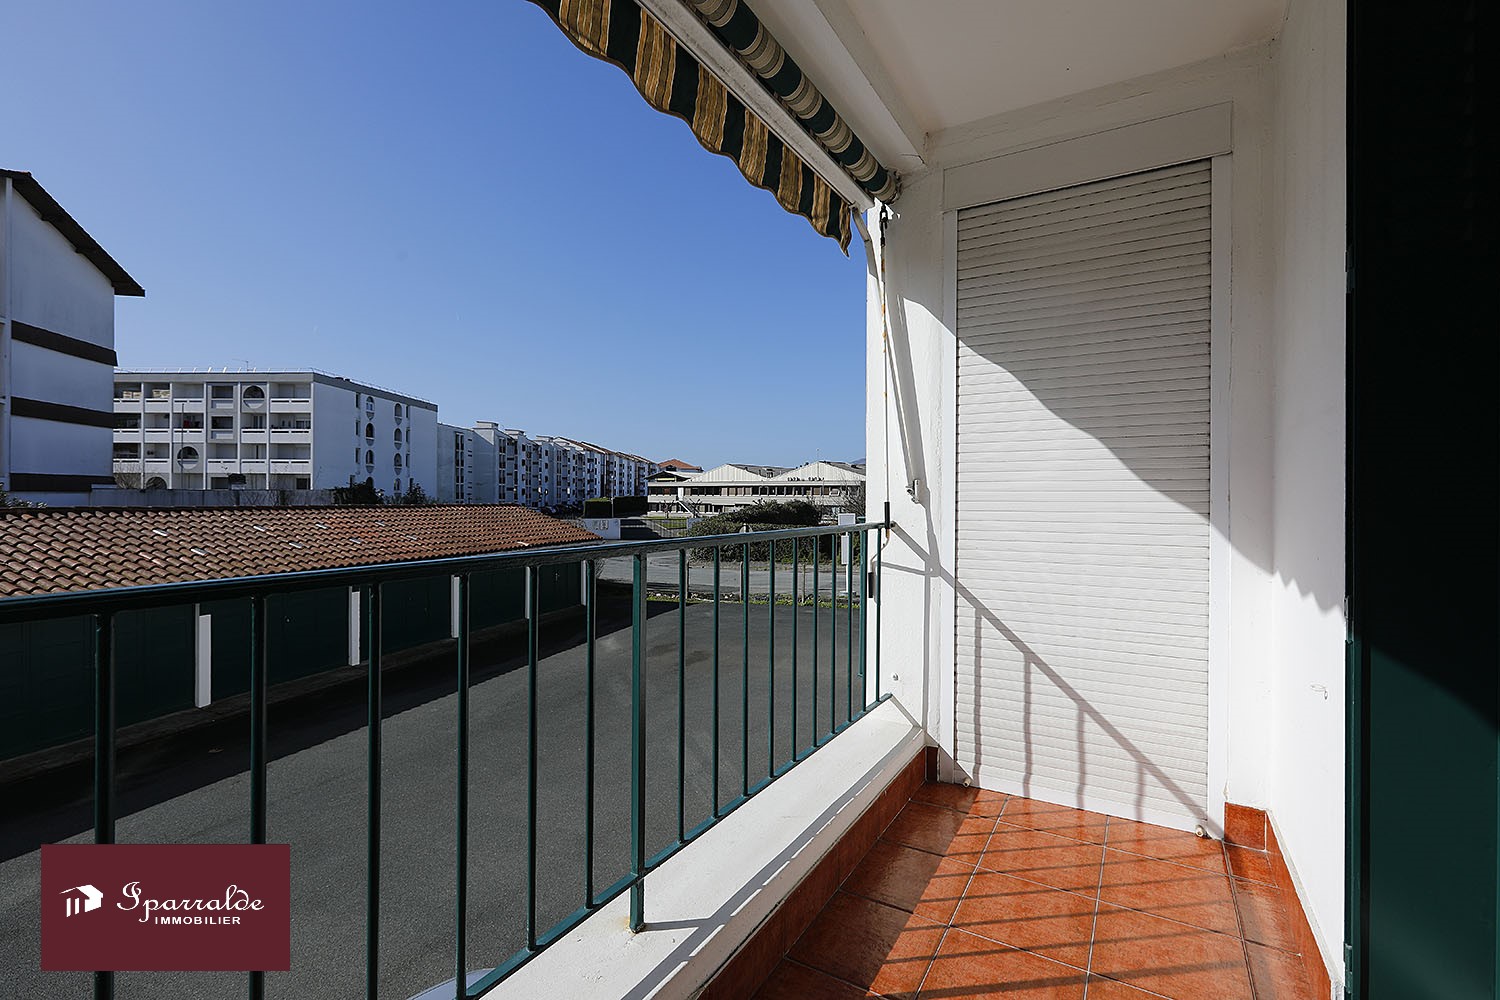 À acheter à Hendaye (64) : appartement T3 de 56m² avec balcon, cave et garage.